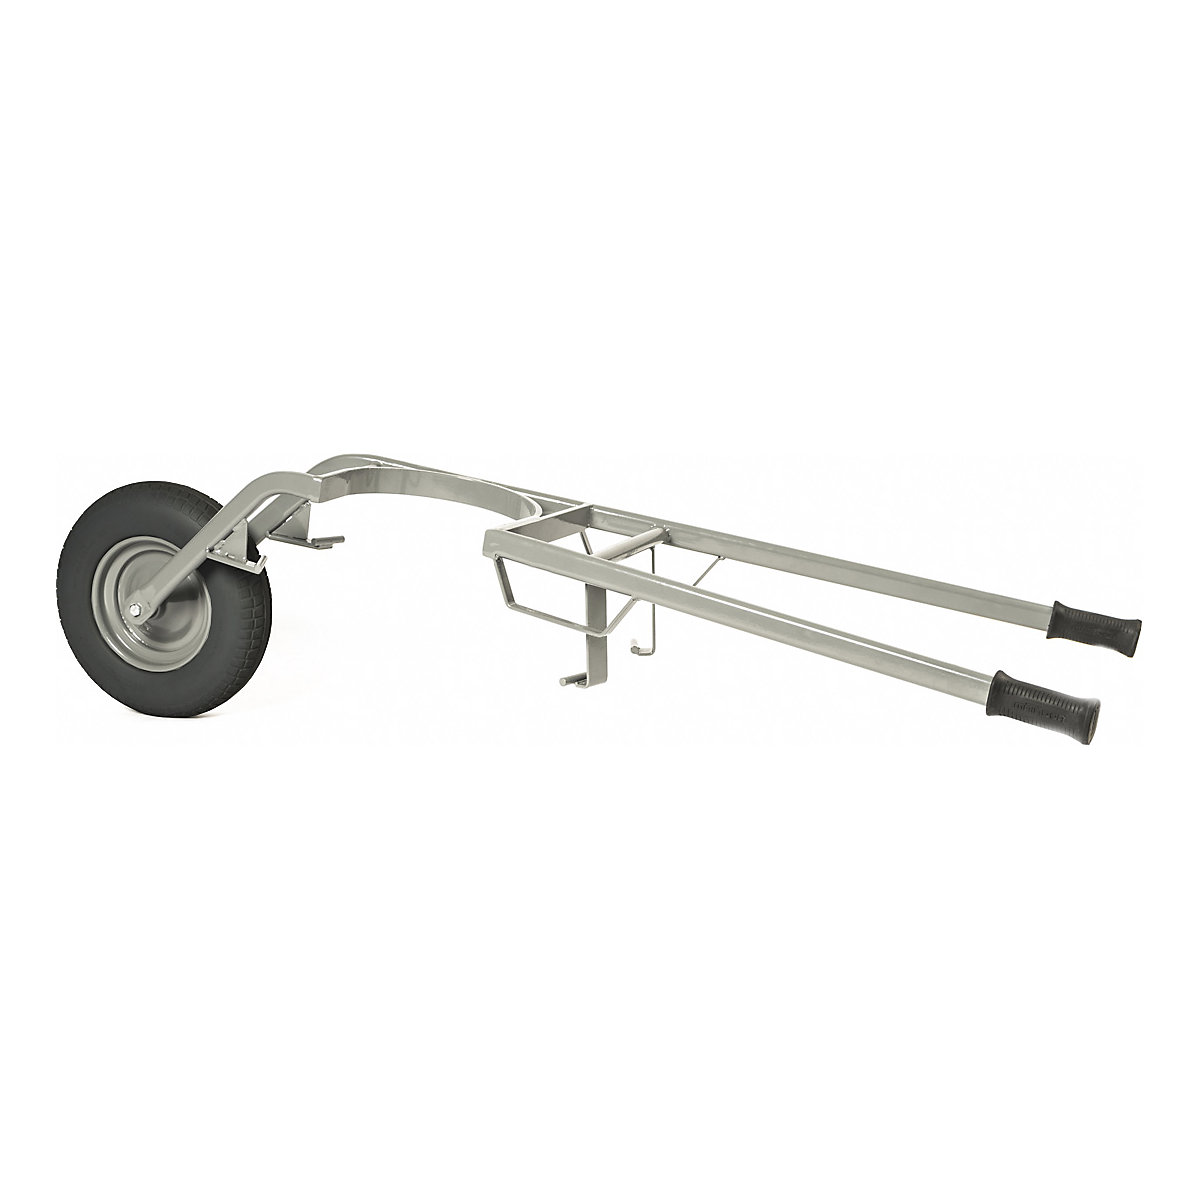 Mortar tub wheel barrow – MATADOR, max. load 250 kg, pneumatic tyres, 6+ items-1